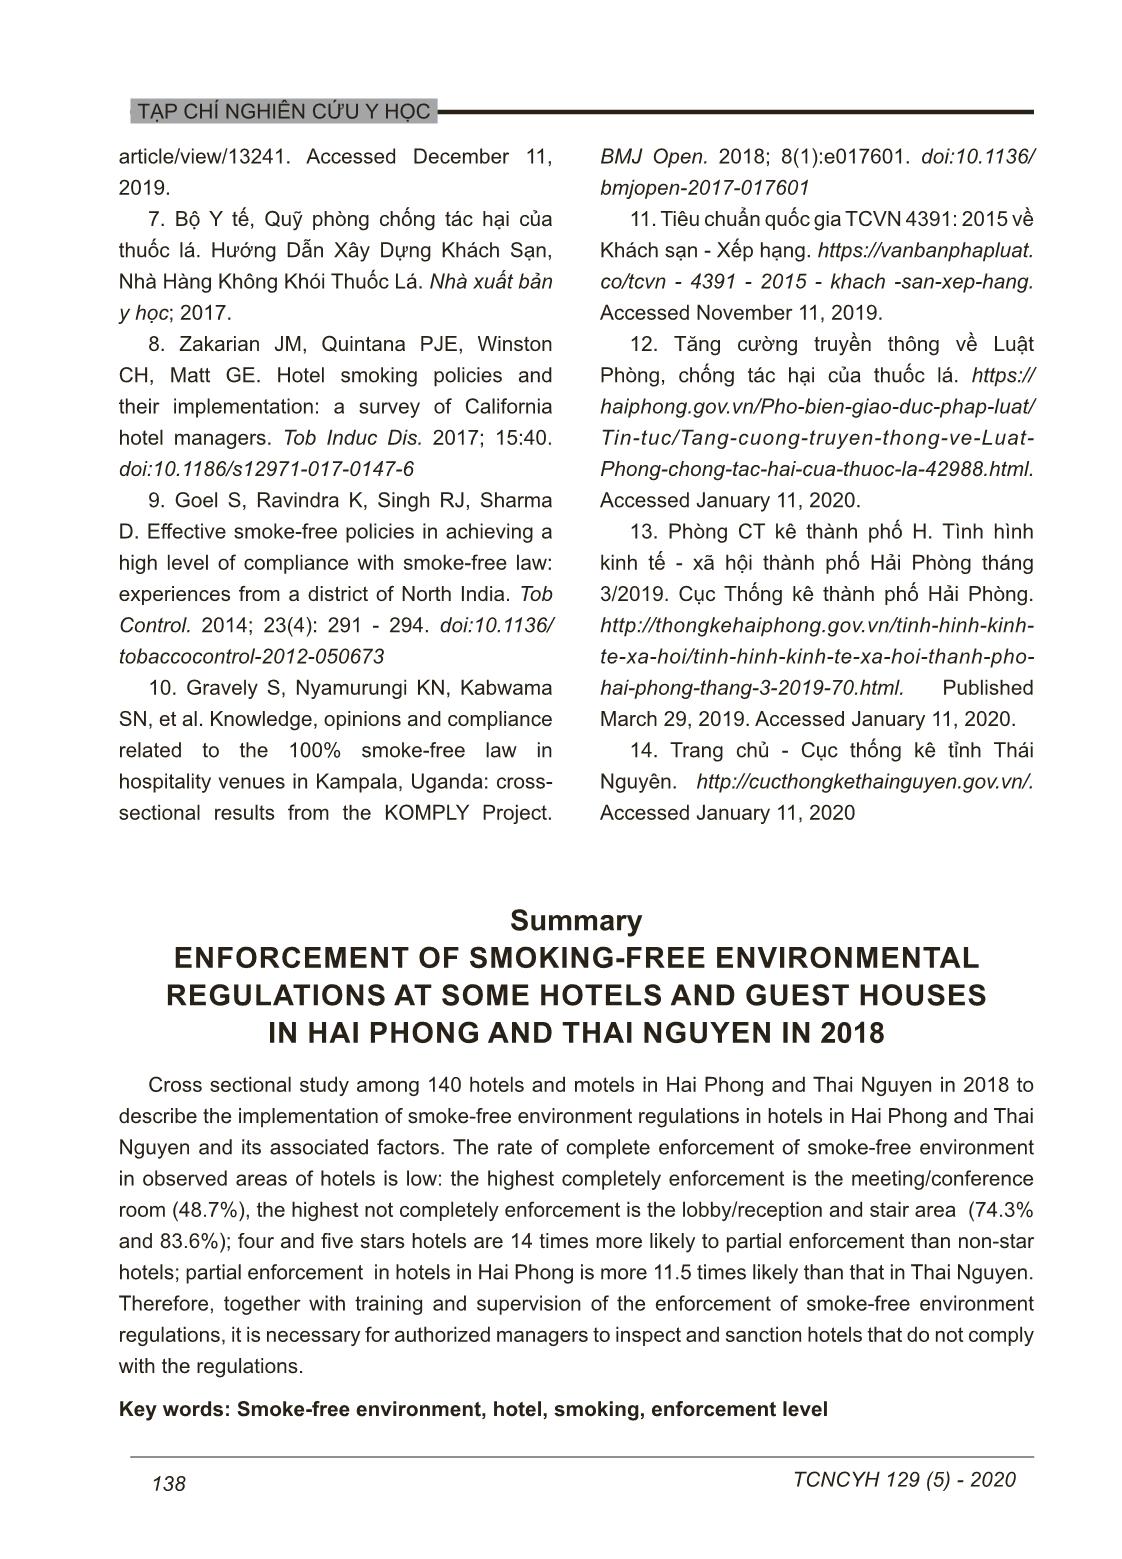 Thực thi quy định môi trường không khói thuốc tại một số khách sạn, nhà nghỉ tại Hải Phòng và Thái Nguyên năm 2018 trang 10